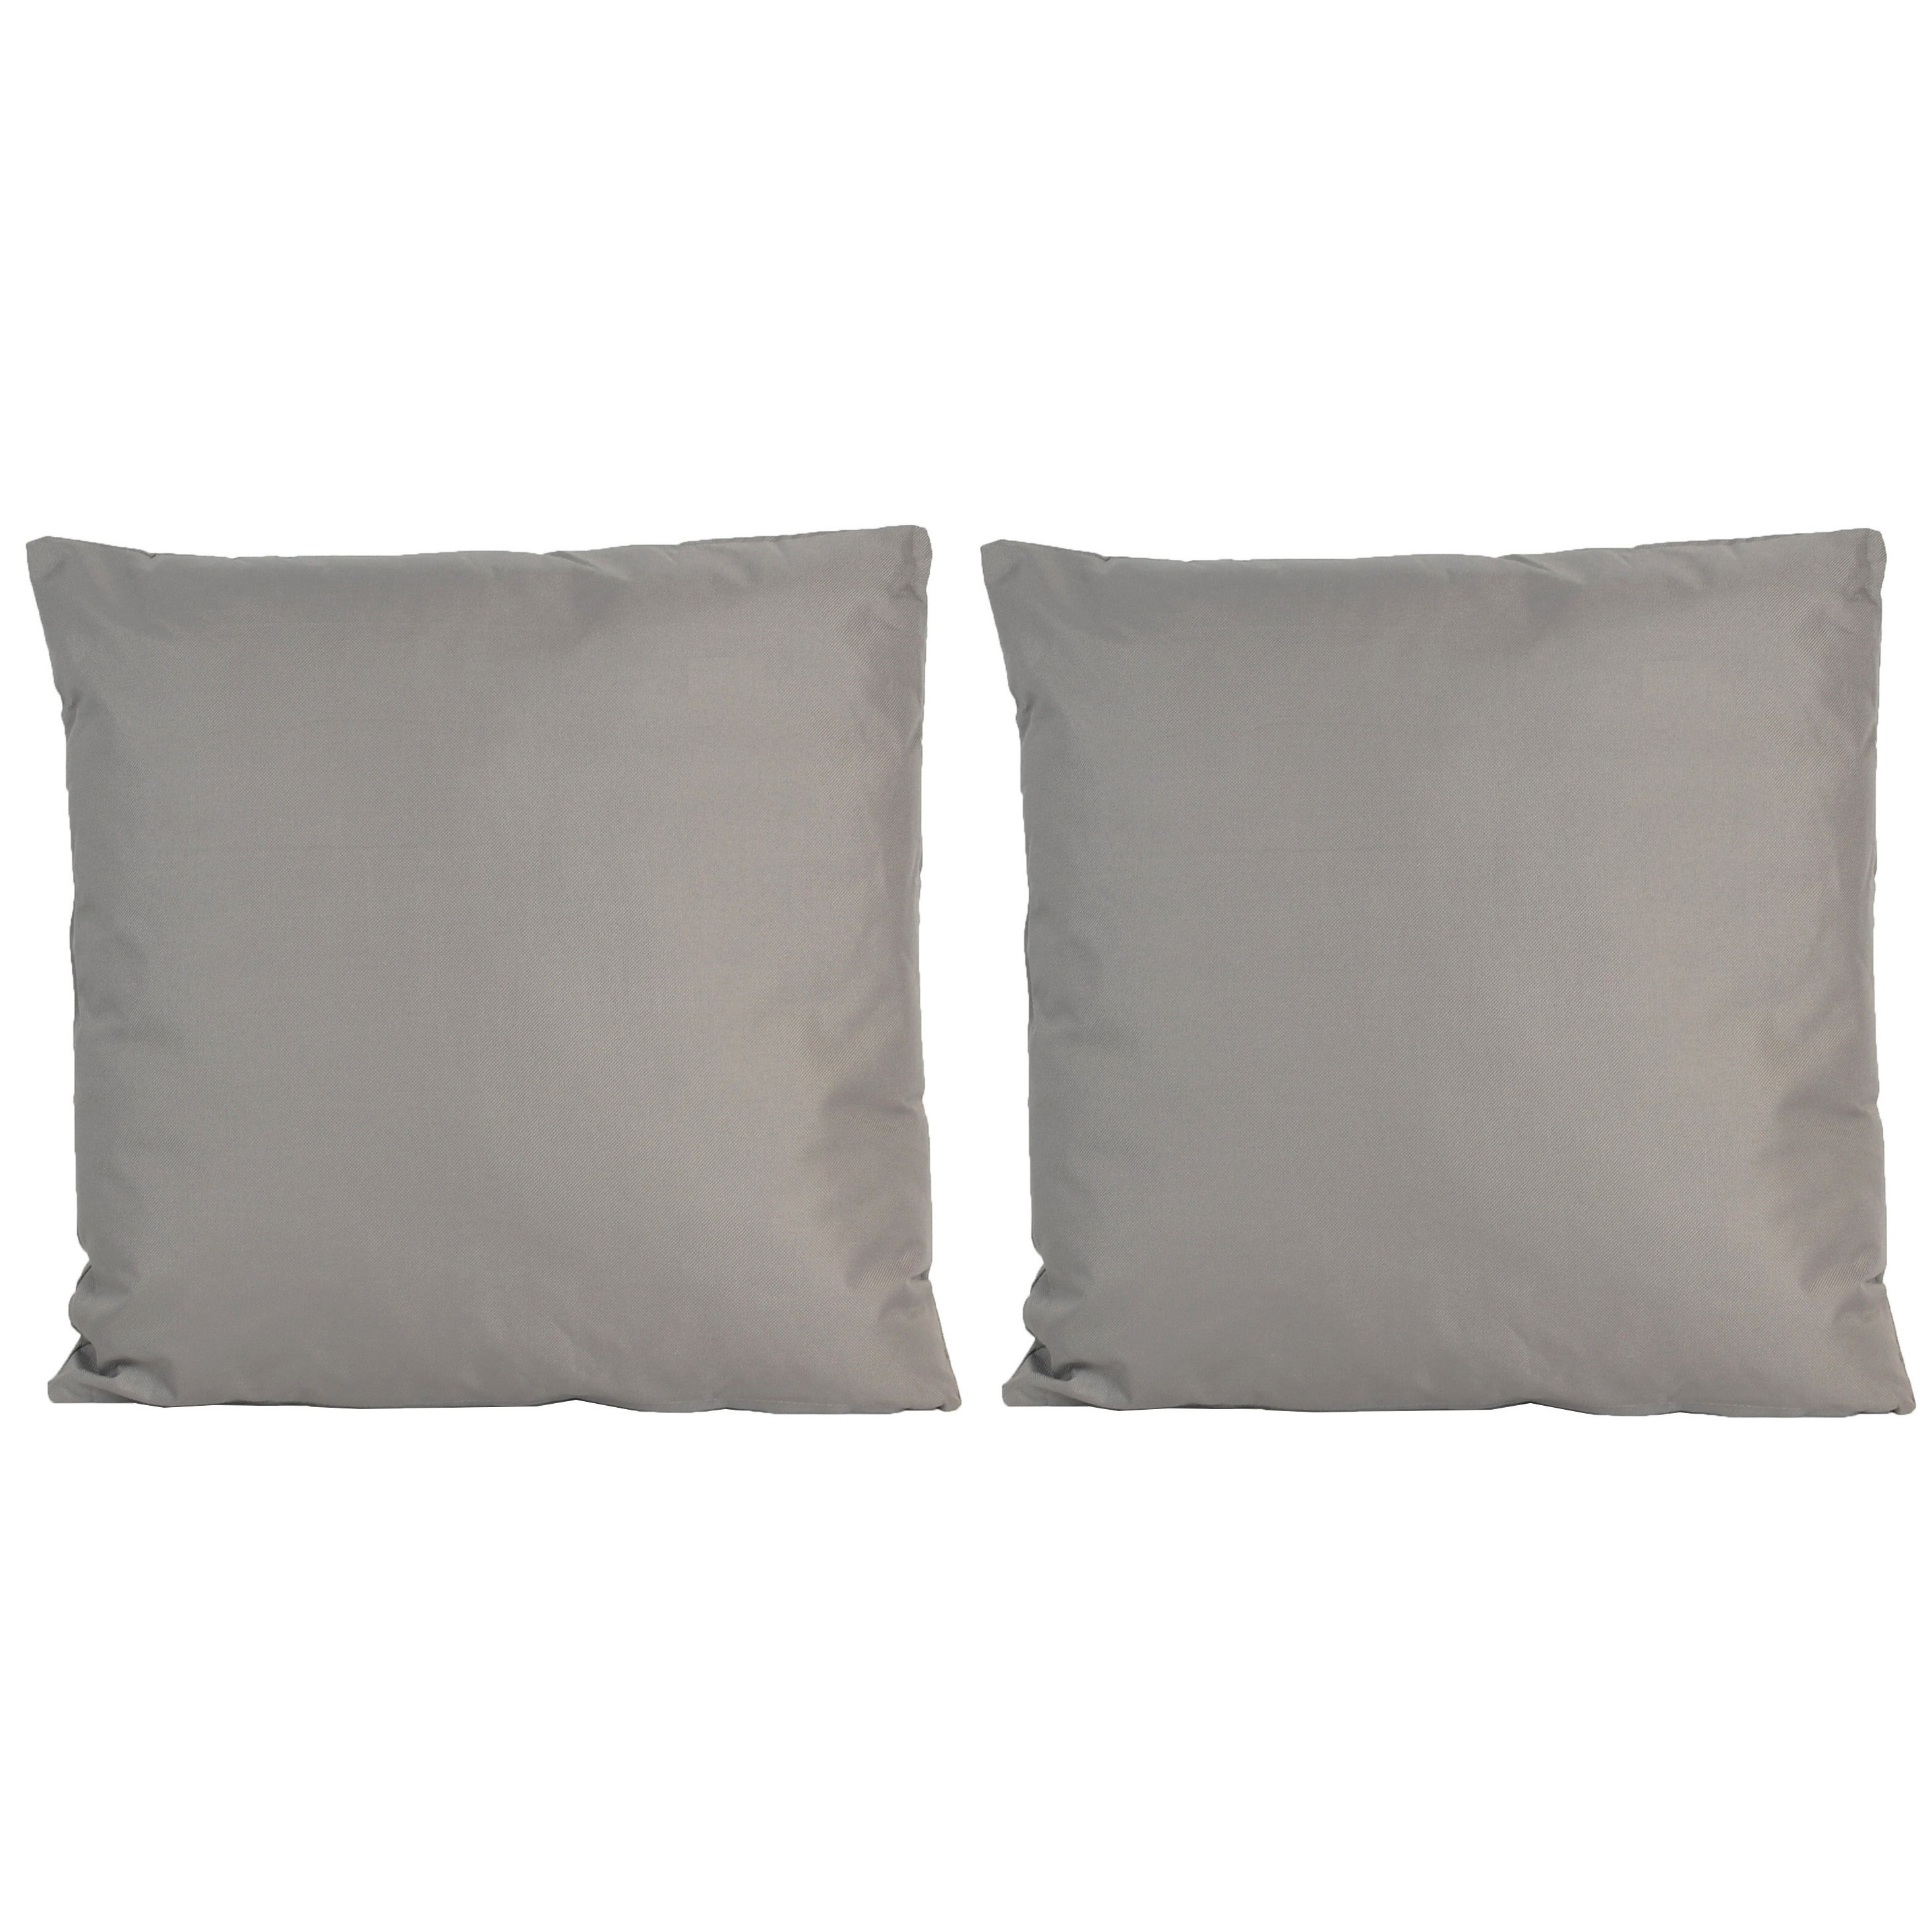 8x Bank-sier kussens voor binnen en buiten in de kleur grijs 45 x 45 cm